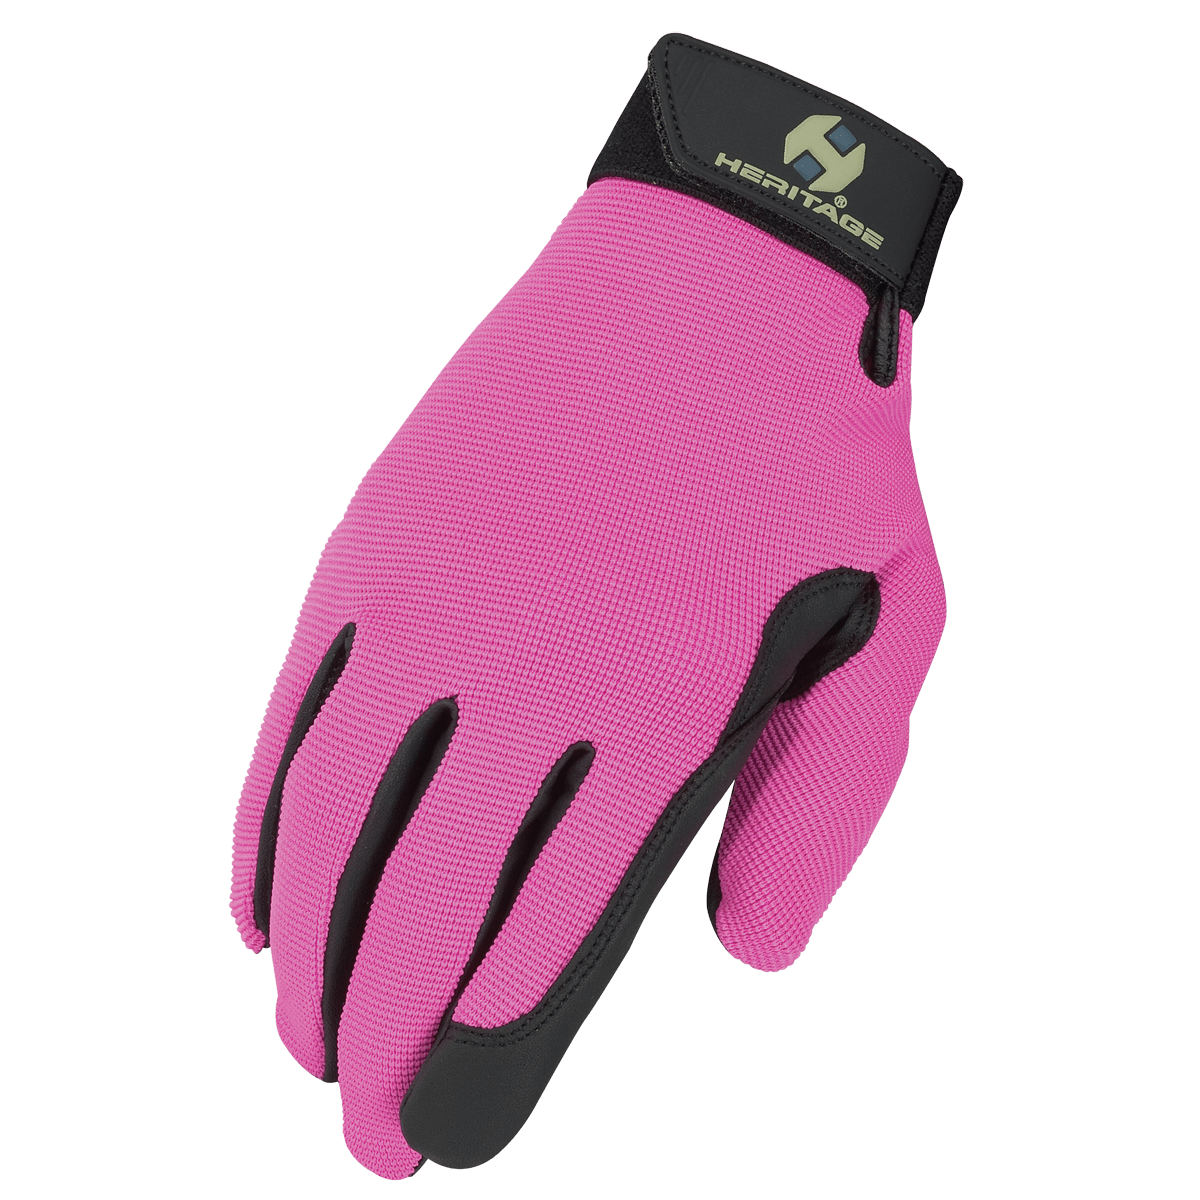 Heritage Performance Glove Pink - Equine Exchange Tack Shop